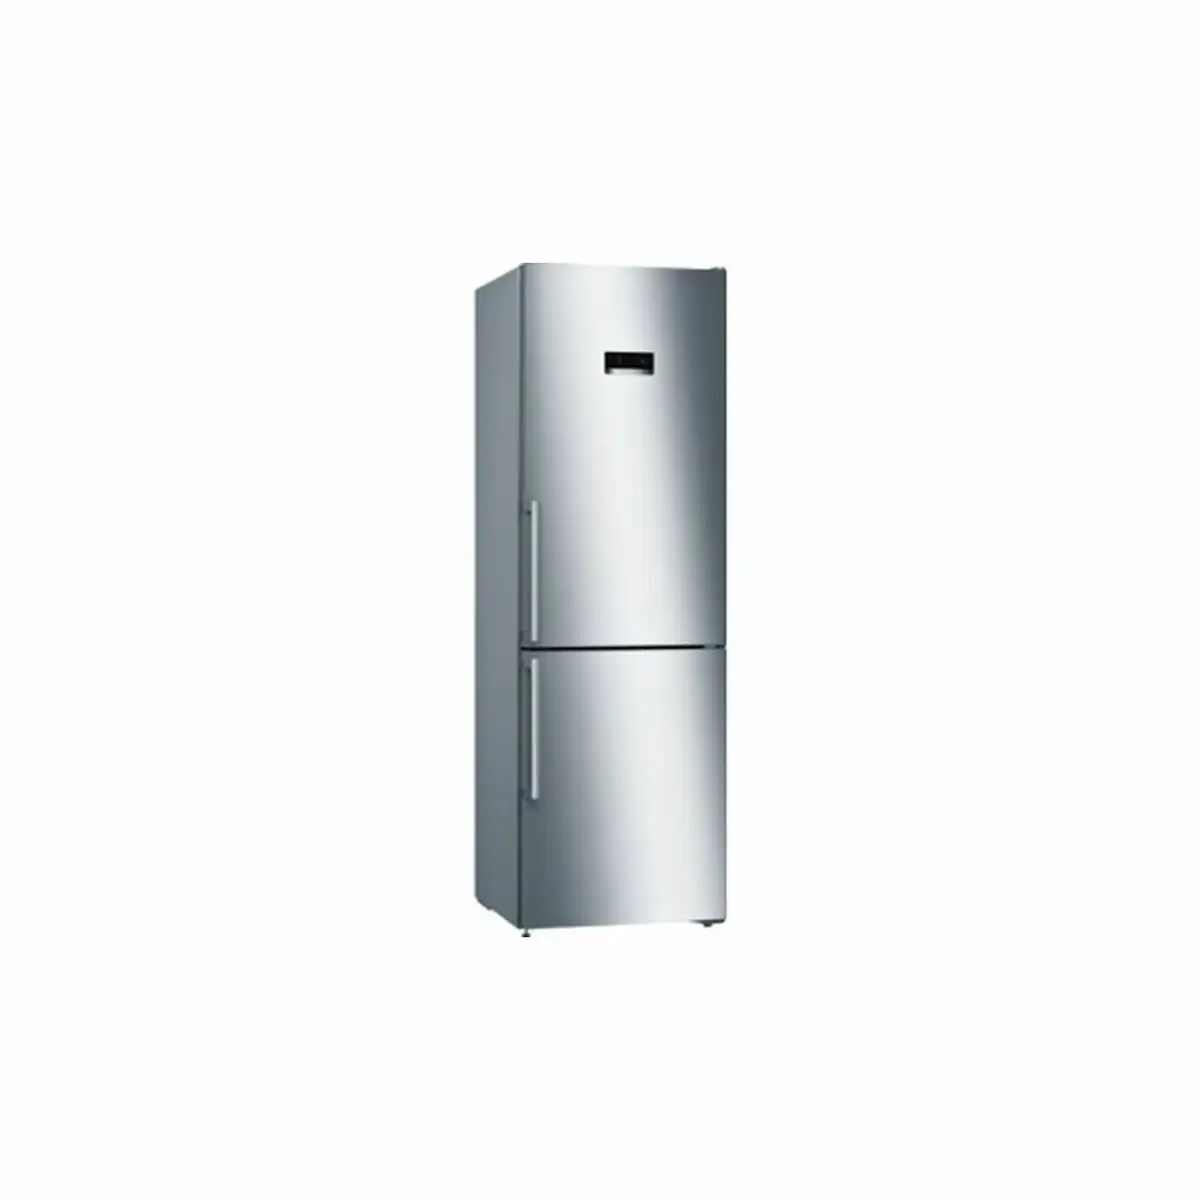 Refrigerateur combine bosch kgn36xiep acier inoxydable 186 x 60 cm _1957. DIAYTAR SENEGAL - Où Chaque Détail Compte. Naviguez à travers notre gamme variée et choisissez des articles qui ajoutent une touche spéciale à votre quotidien, toujours avec qualité et style.